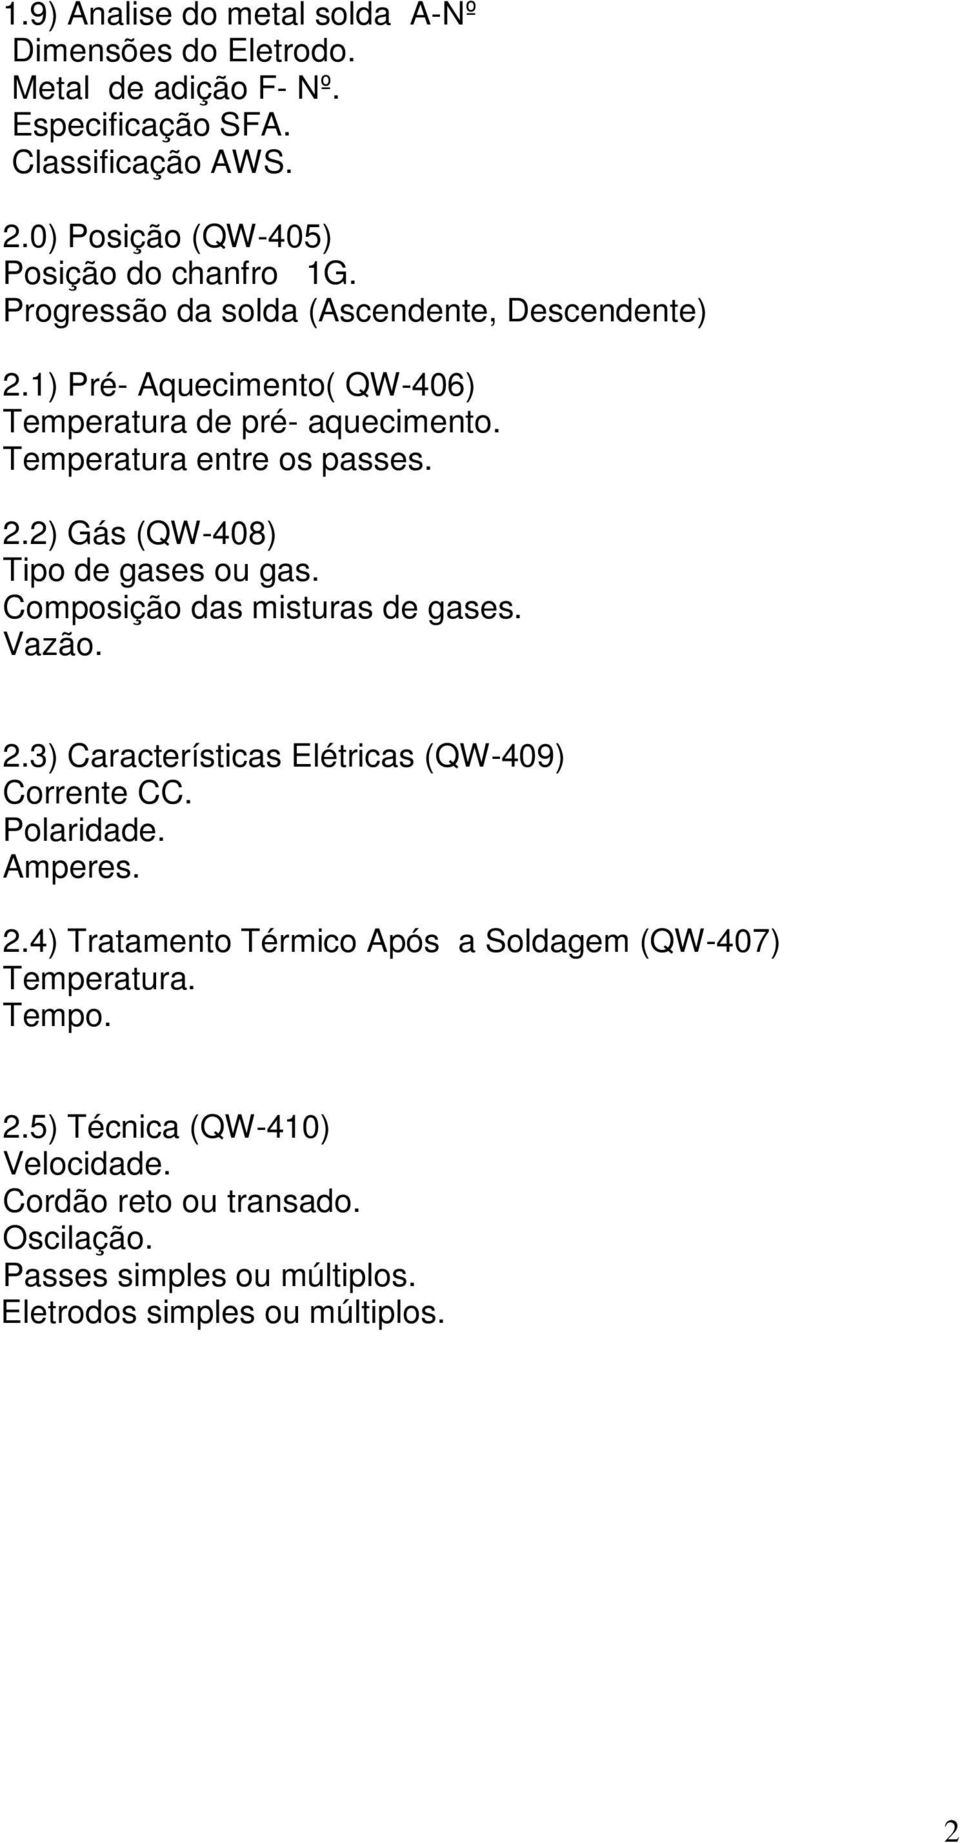 Composição das misturas de gases. Vazão. 2.3) Características Elétricas (QW-409) Corrente CC. Polaridade. Amperes. 2.4) Tratamento Térmico Após a Soldagem (QW-407) Temperatura.